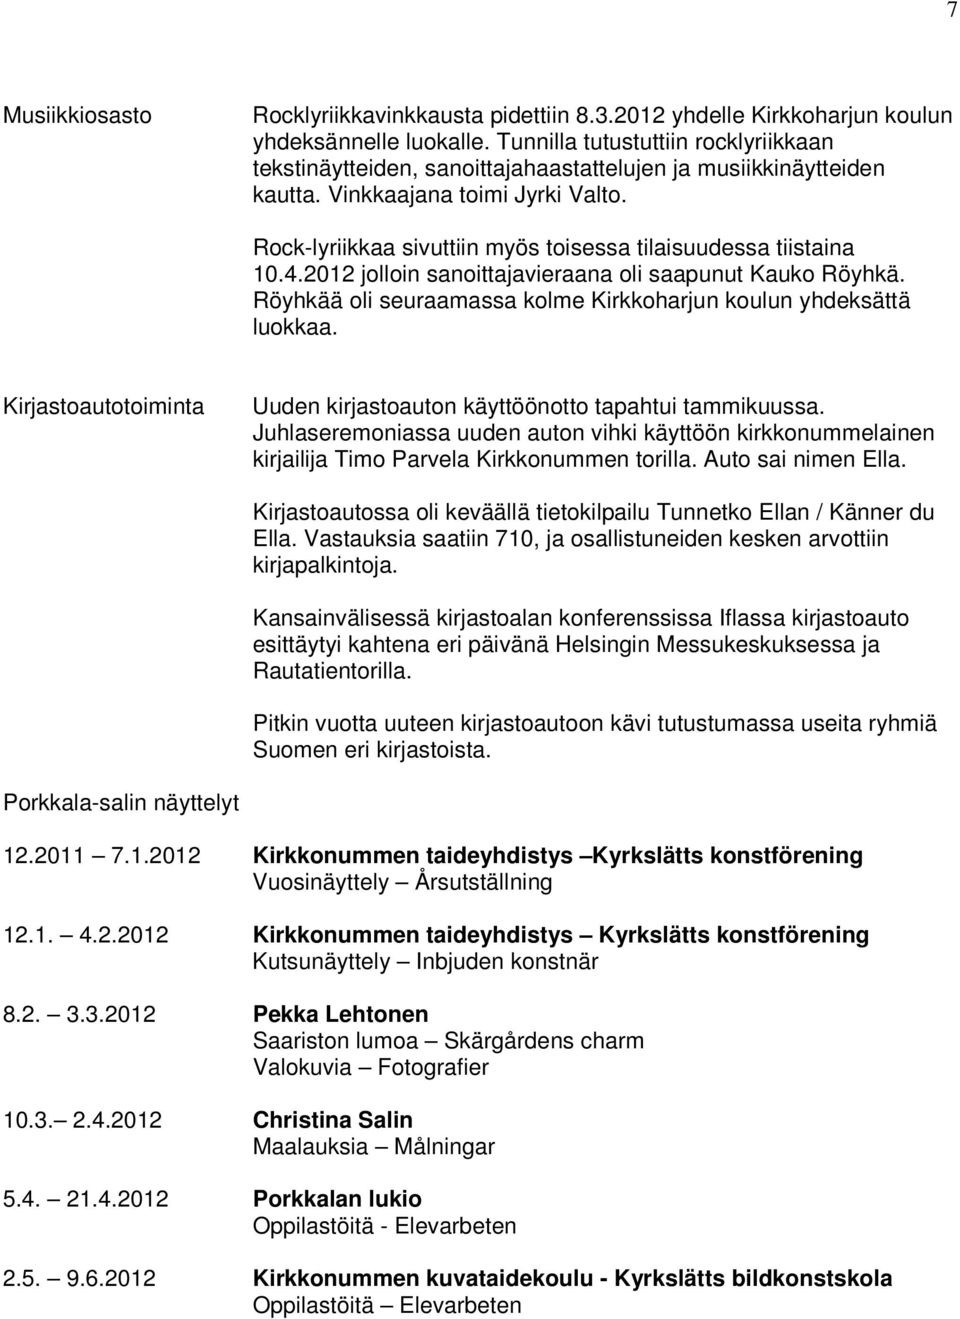 Rock-lyriikkaa sivuttiin myös toisessa tilaisuudessa tiistaina 10.4.2012 jolloin sanoittajavieraana oli saapunut Kauko Röyhkä. Röyhkää oli seuraamassa kolme Kirkkoharjun koulun yhdeksättä luokkaa.